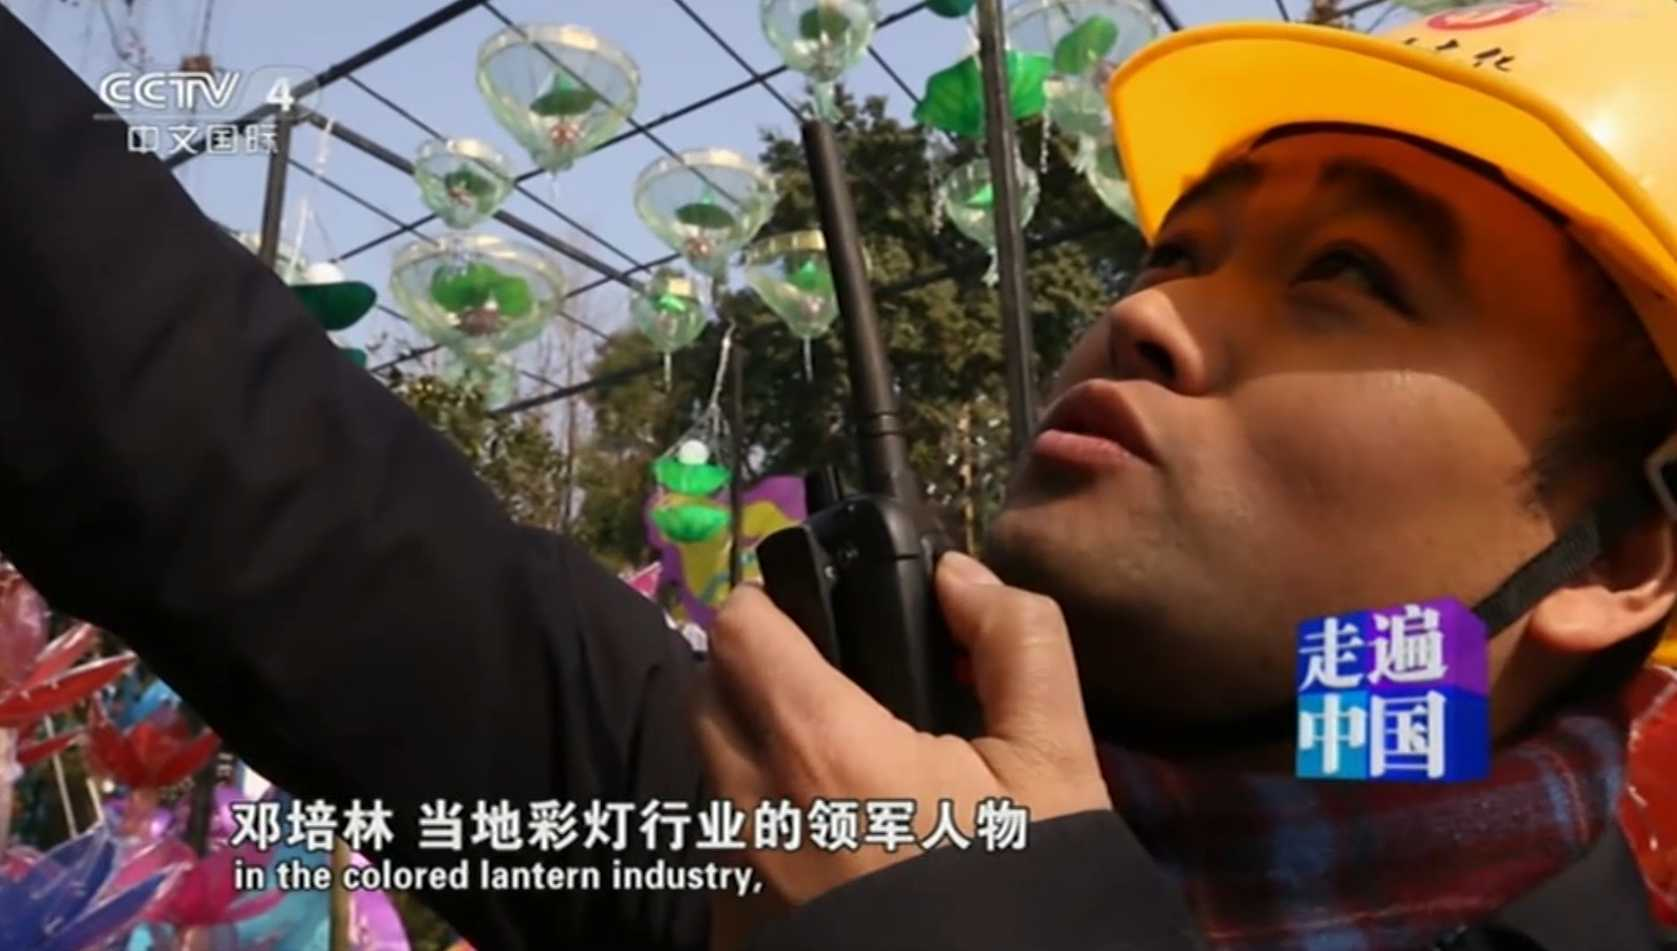 央视《走遍中国》节目组来到龙腾制灯现场